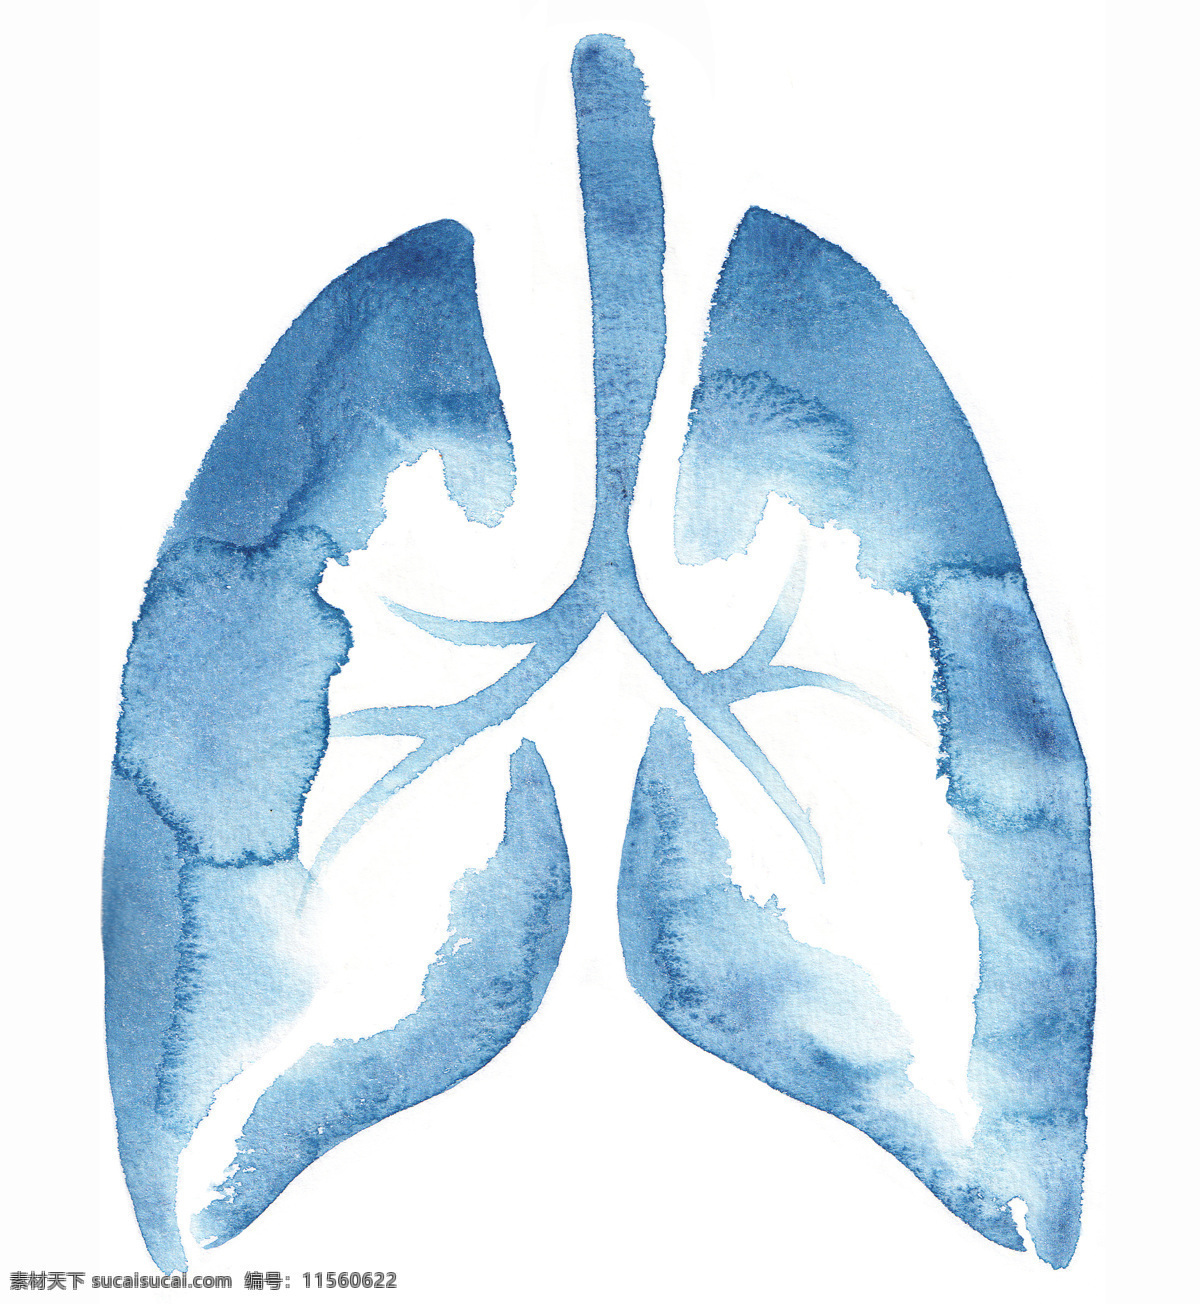 人体肺部结构 人体 肺部结构 肺 矽肺病 呼吸道 生活百科 医疗保健